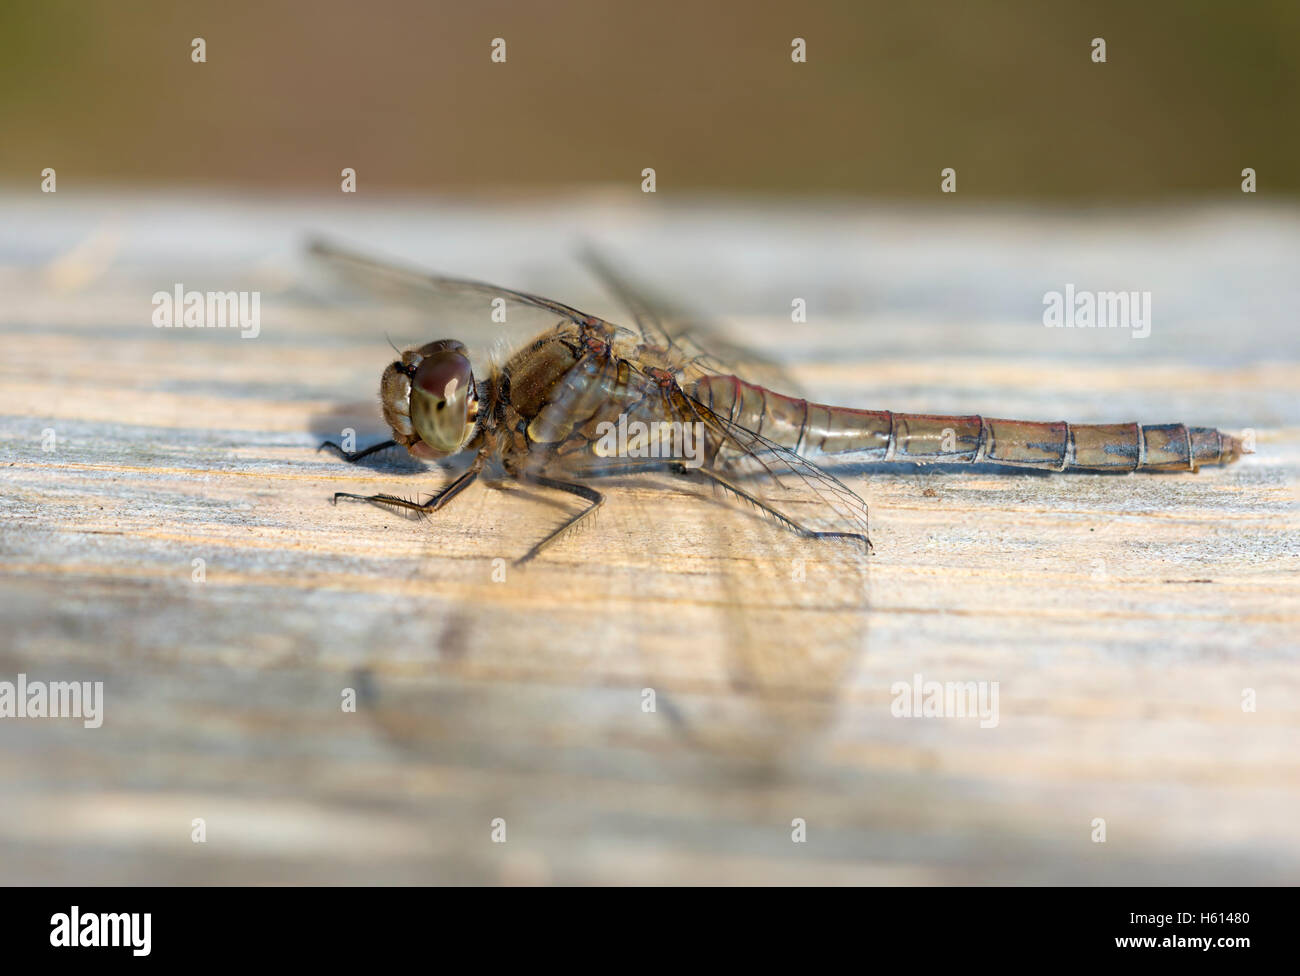 Hembra Darter común Dragonfly tomando el sol de la mañana Foto de stock